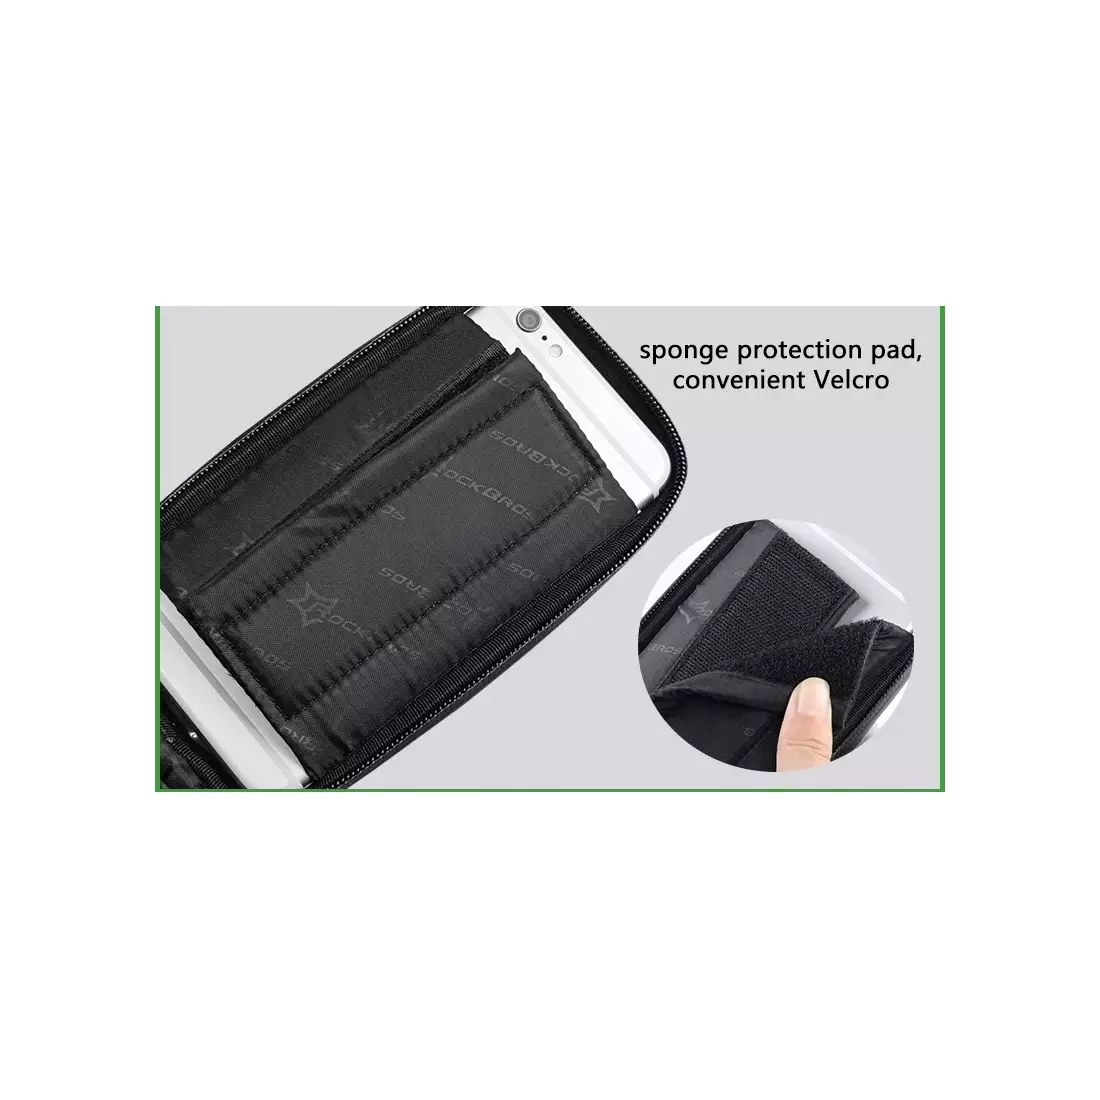 Rockbros rámová telefonní taška, černá a zelená 021-1G